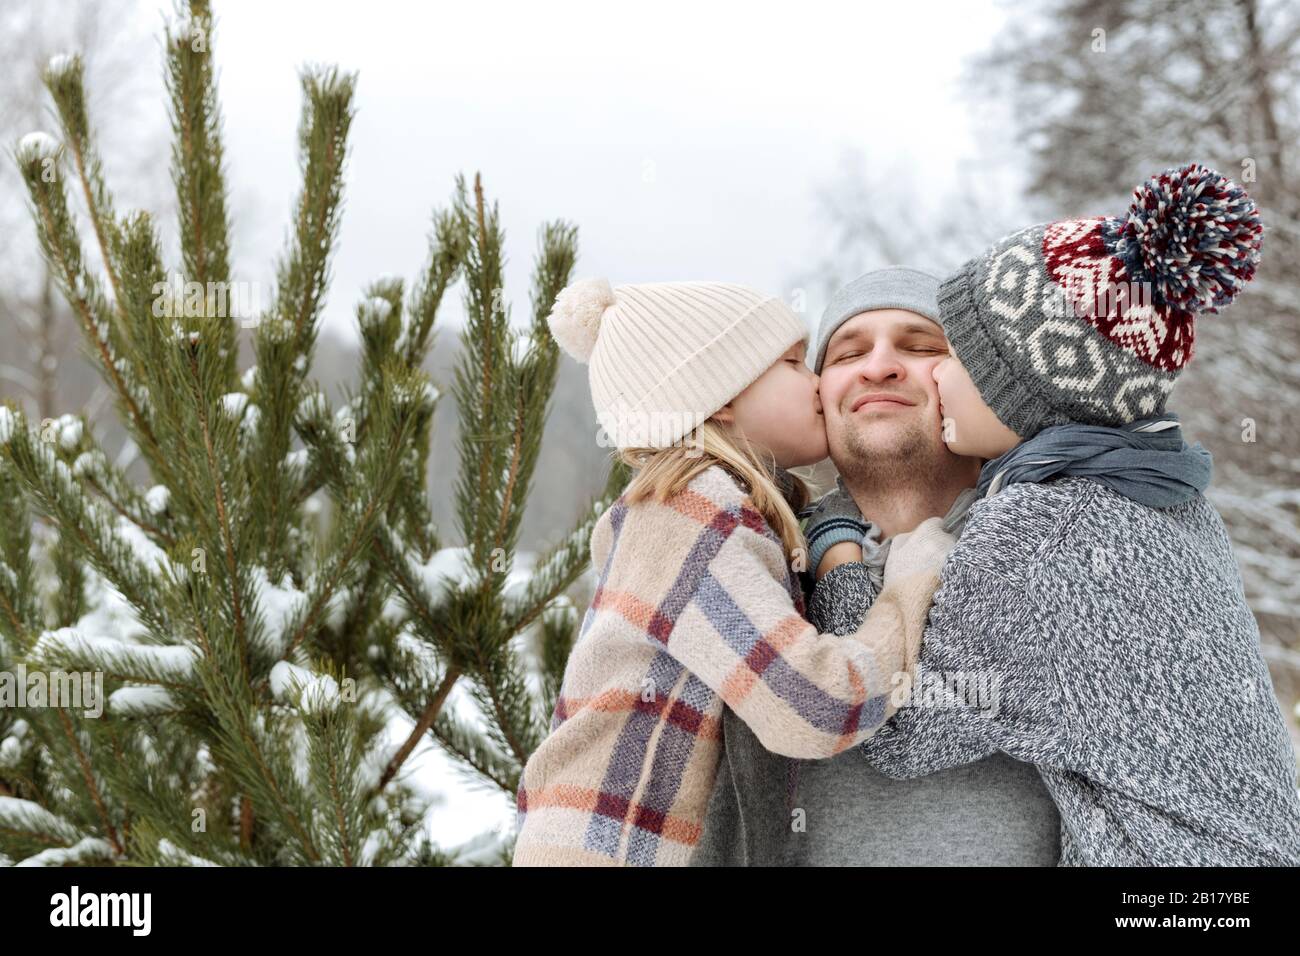 Due bambini baciano il loro padre felice ad un abete in inverno Foto Stock